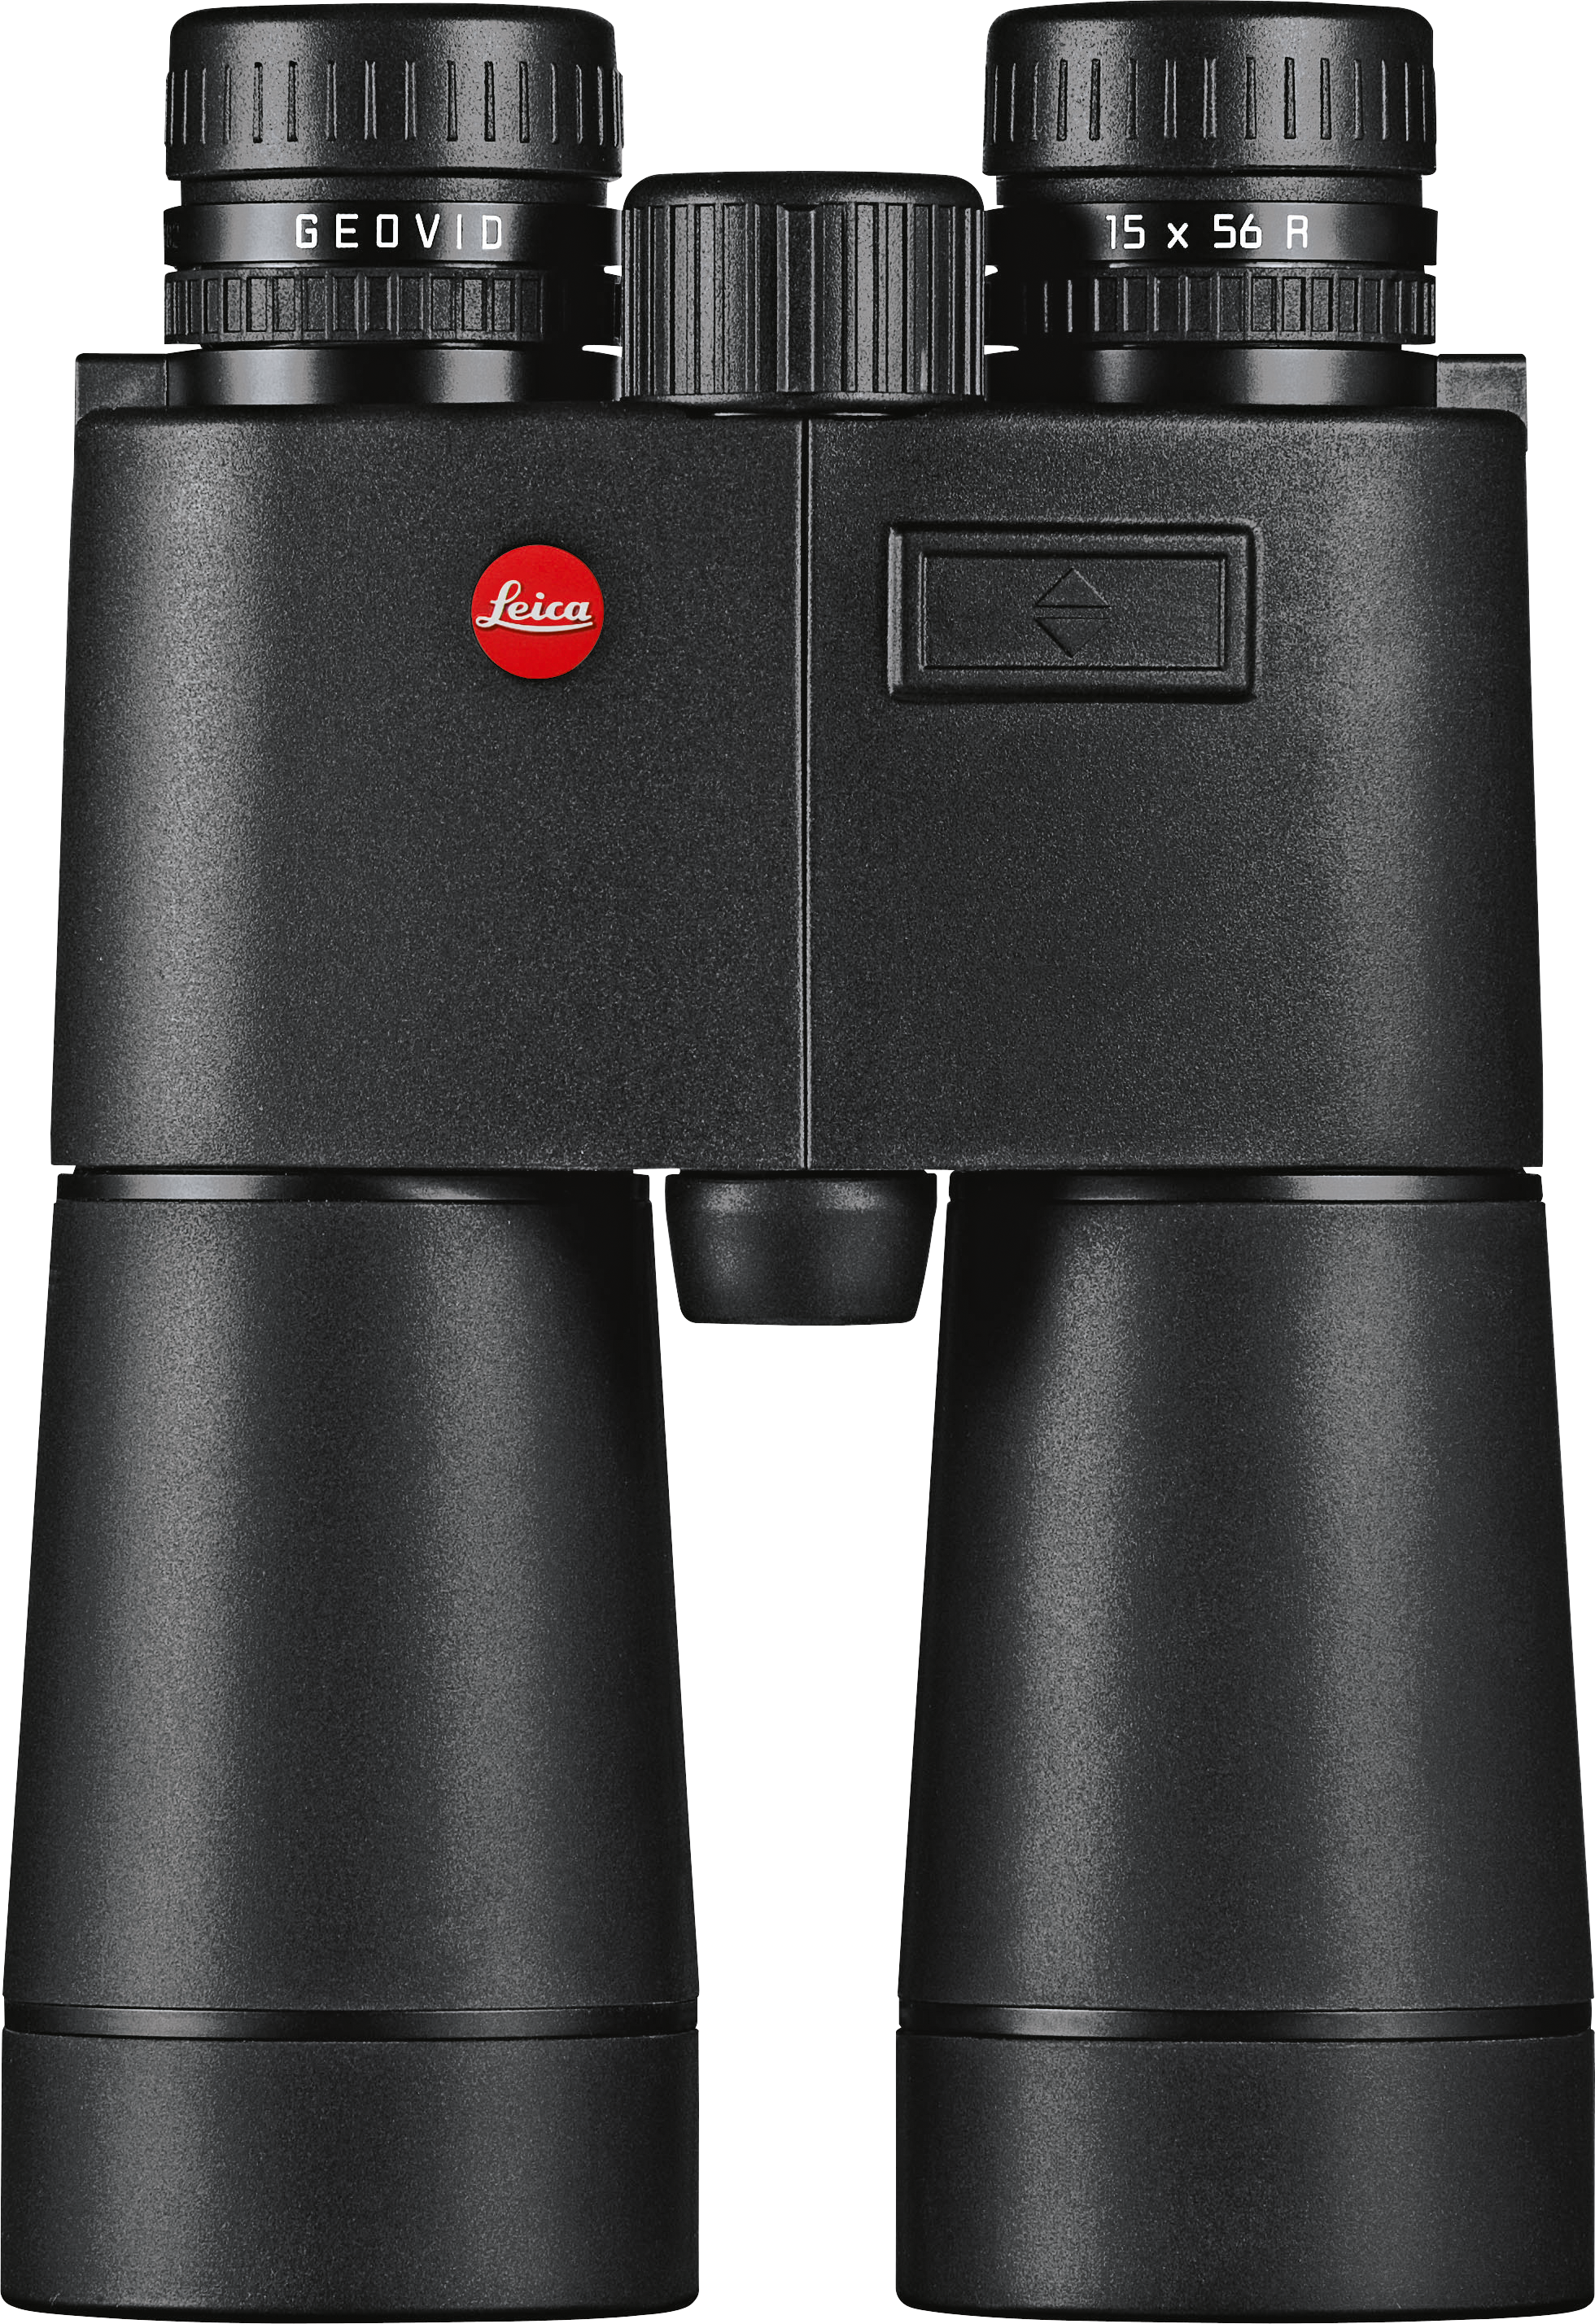 Leica Geovid R Rangefinder 10x42 Binoculars